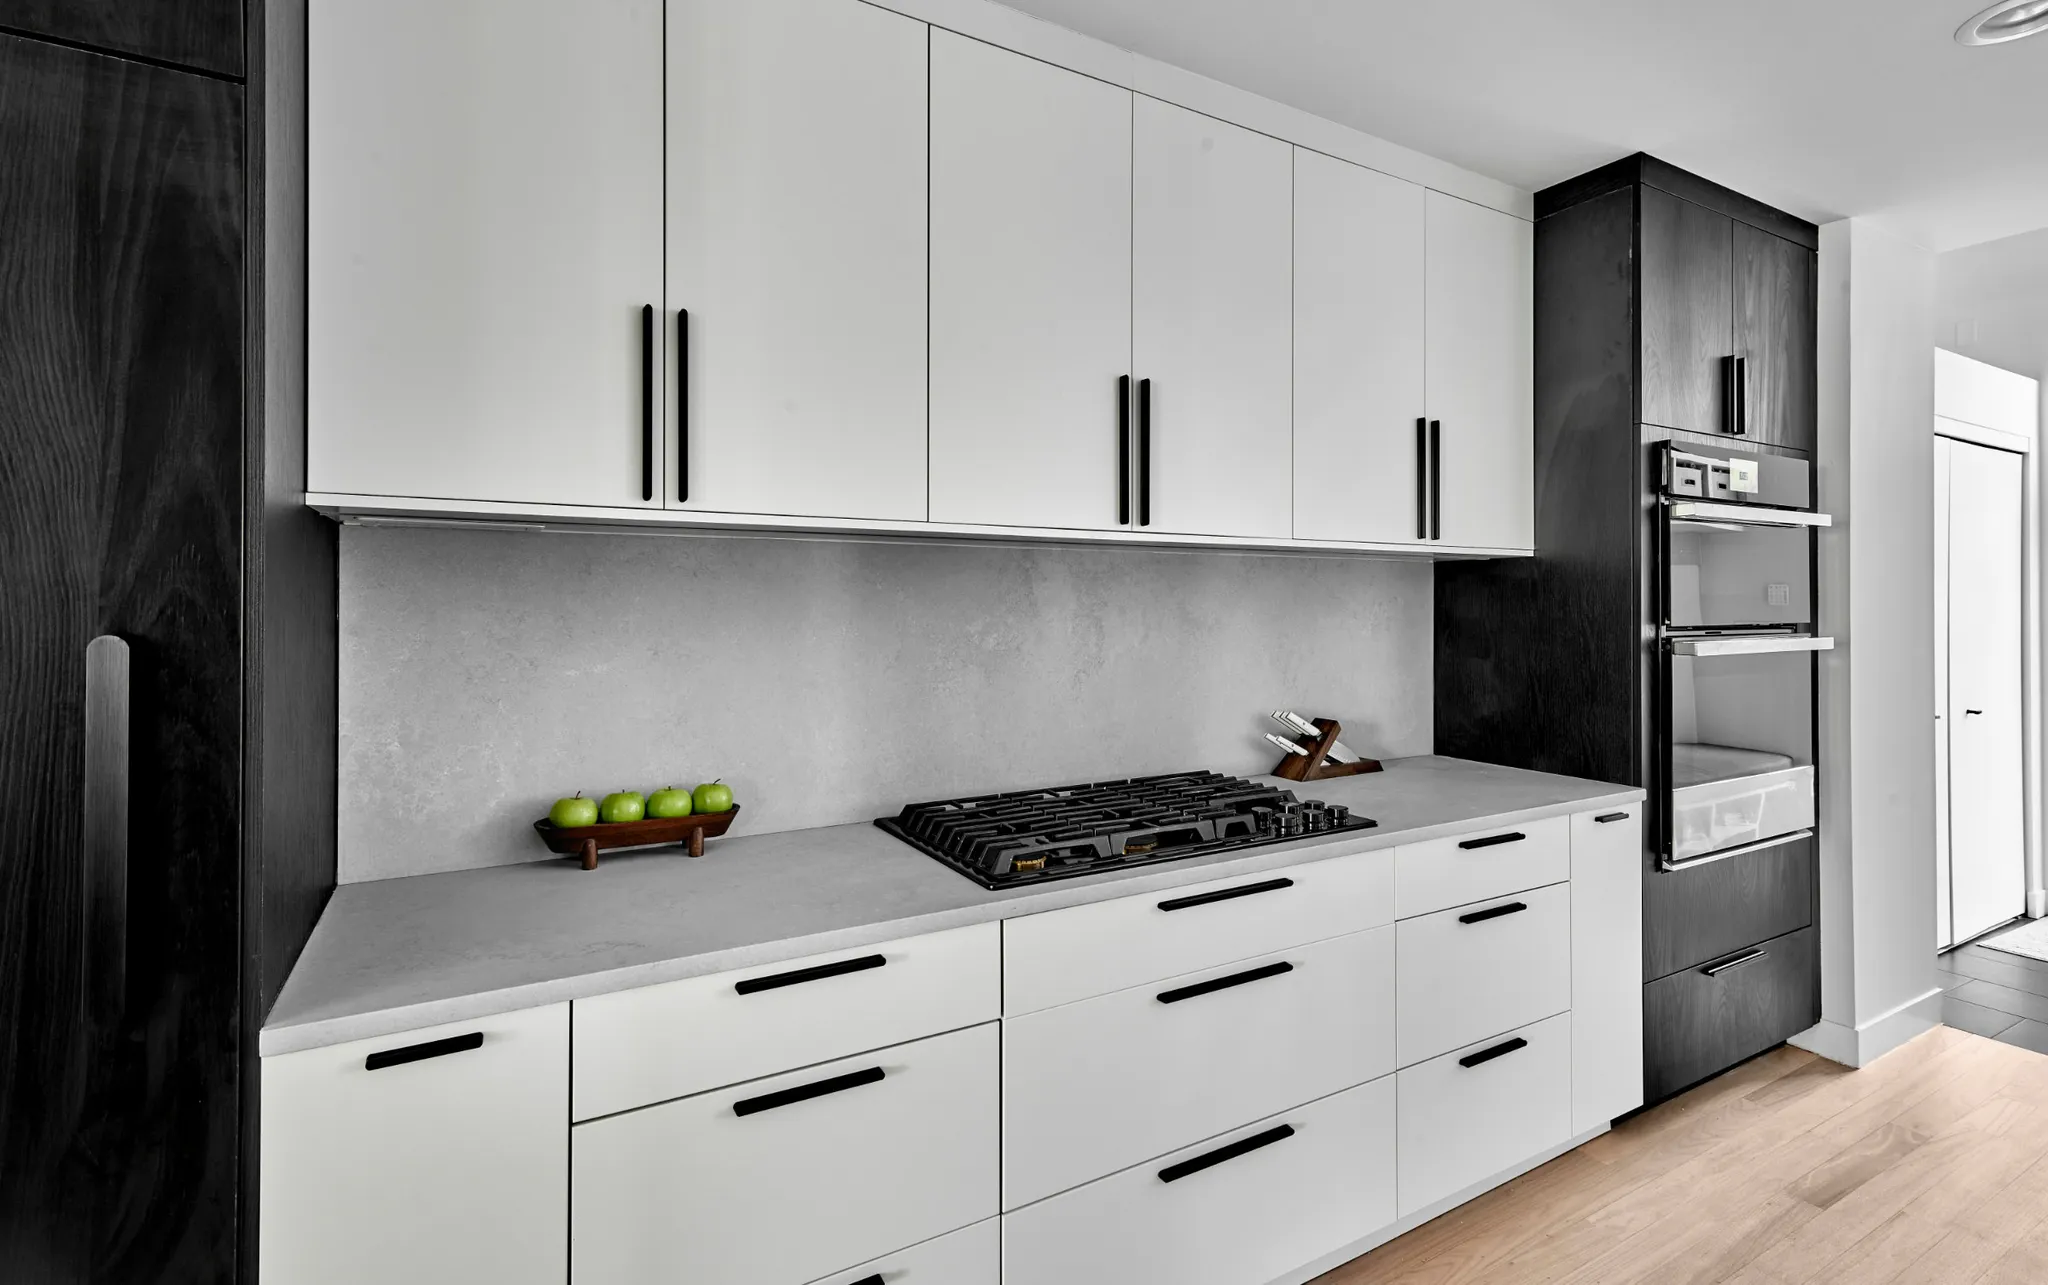 Scottsdale, AZ kitchen - Flat white kitchen cabinets